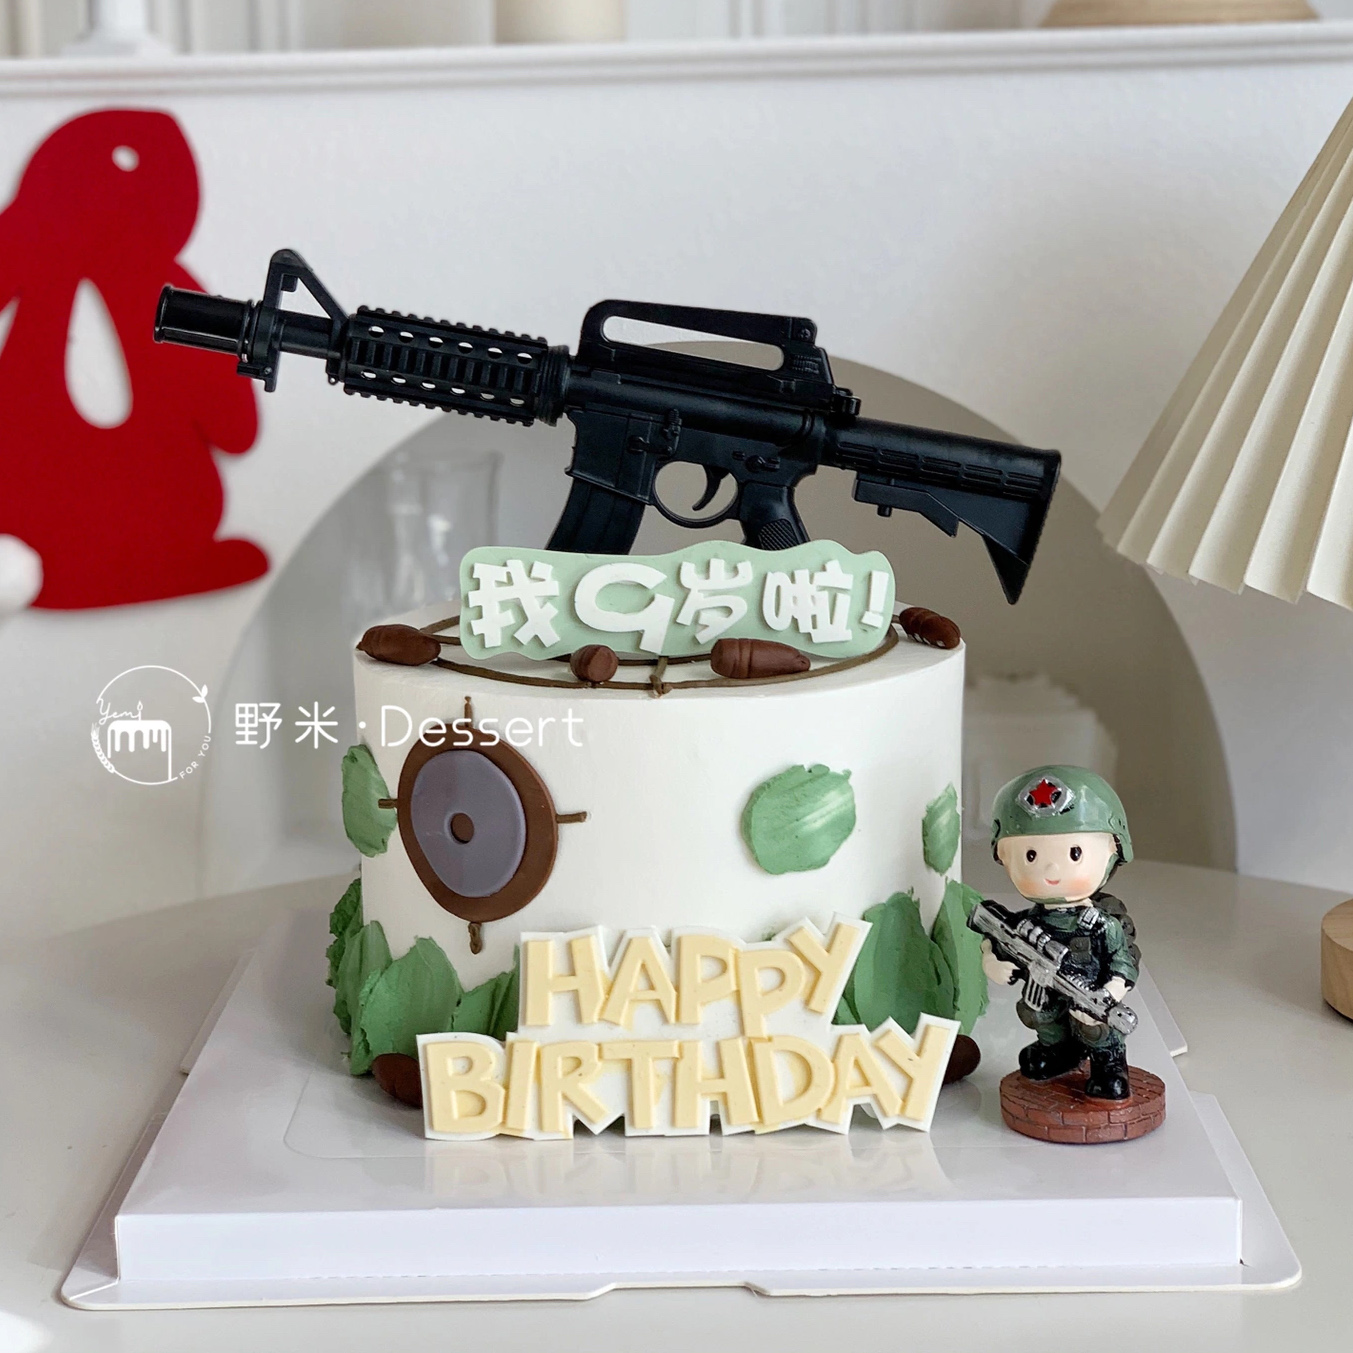 军事部队主题蛋糕装饰特种兵机枪坦克火箭炮导弹男孩生日蛋糕摆件